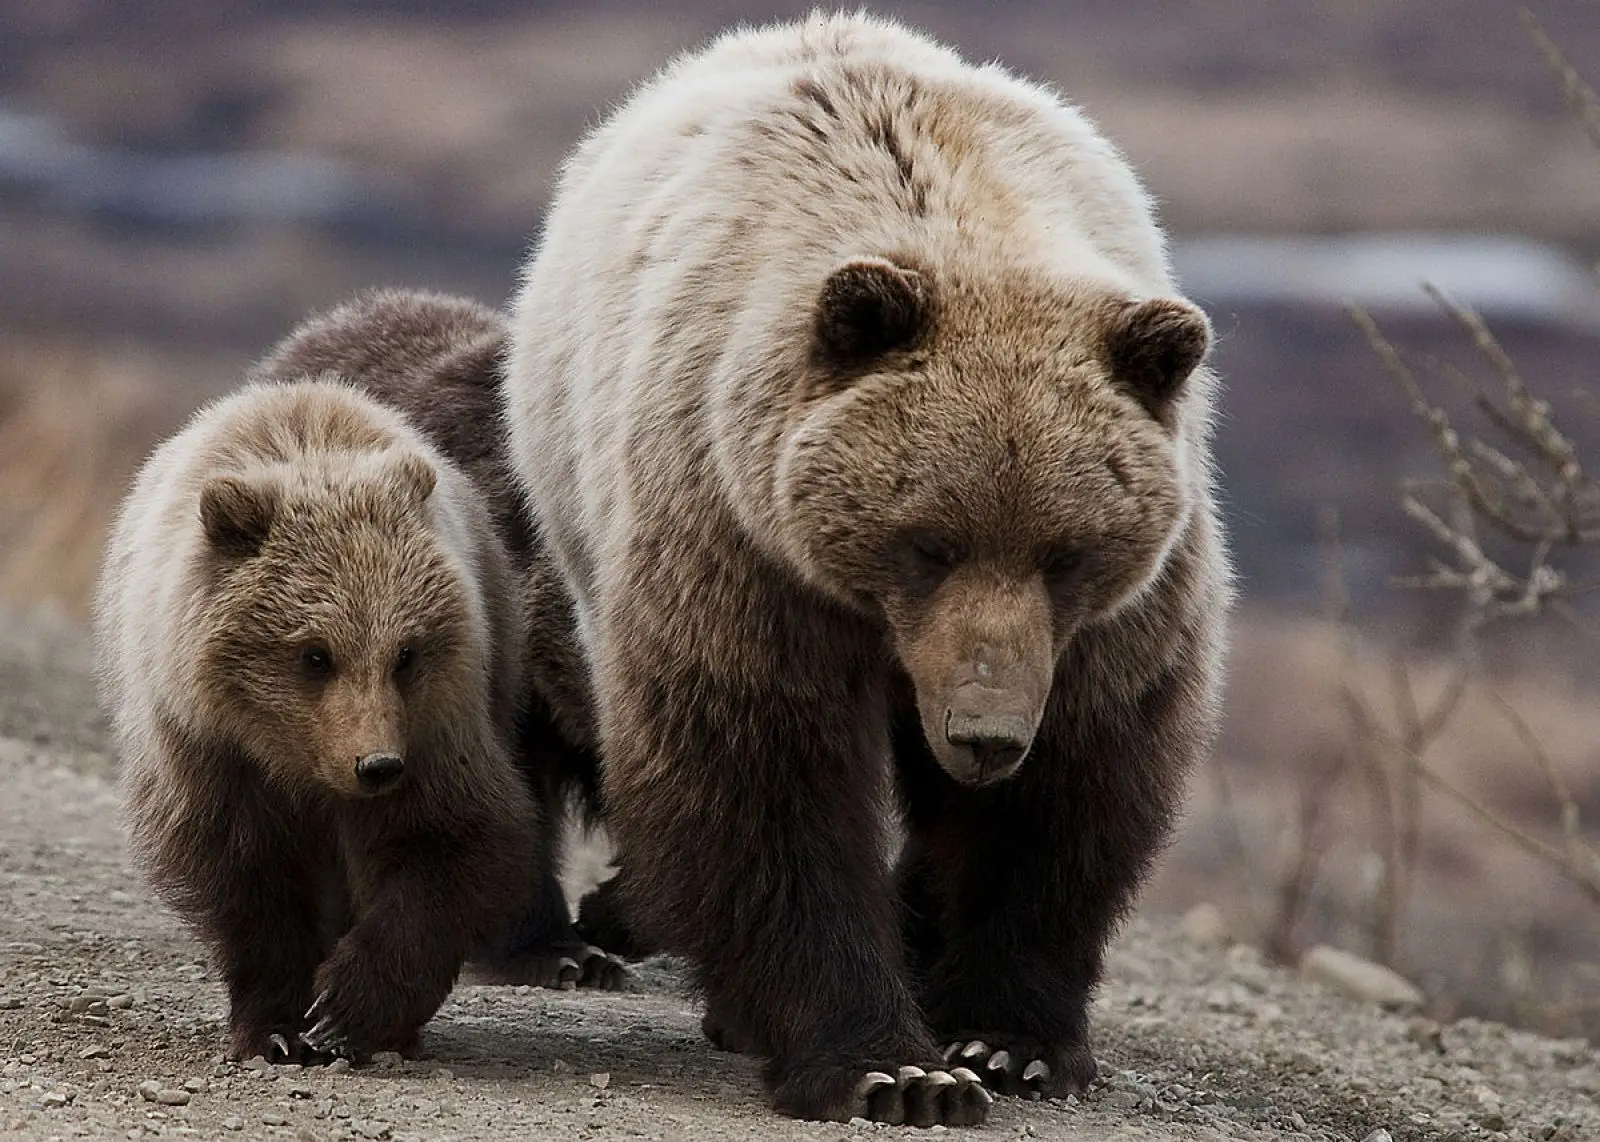 Post precedente: Abbattimento orsi pericolosi: il via libera al decreto in Trentino